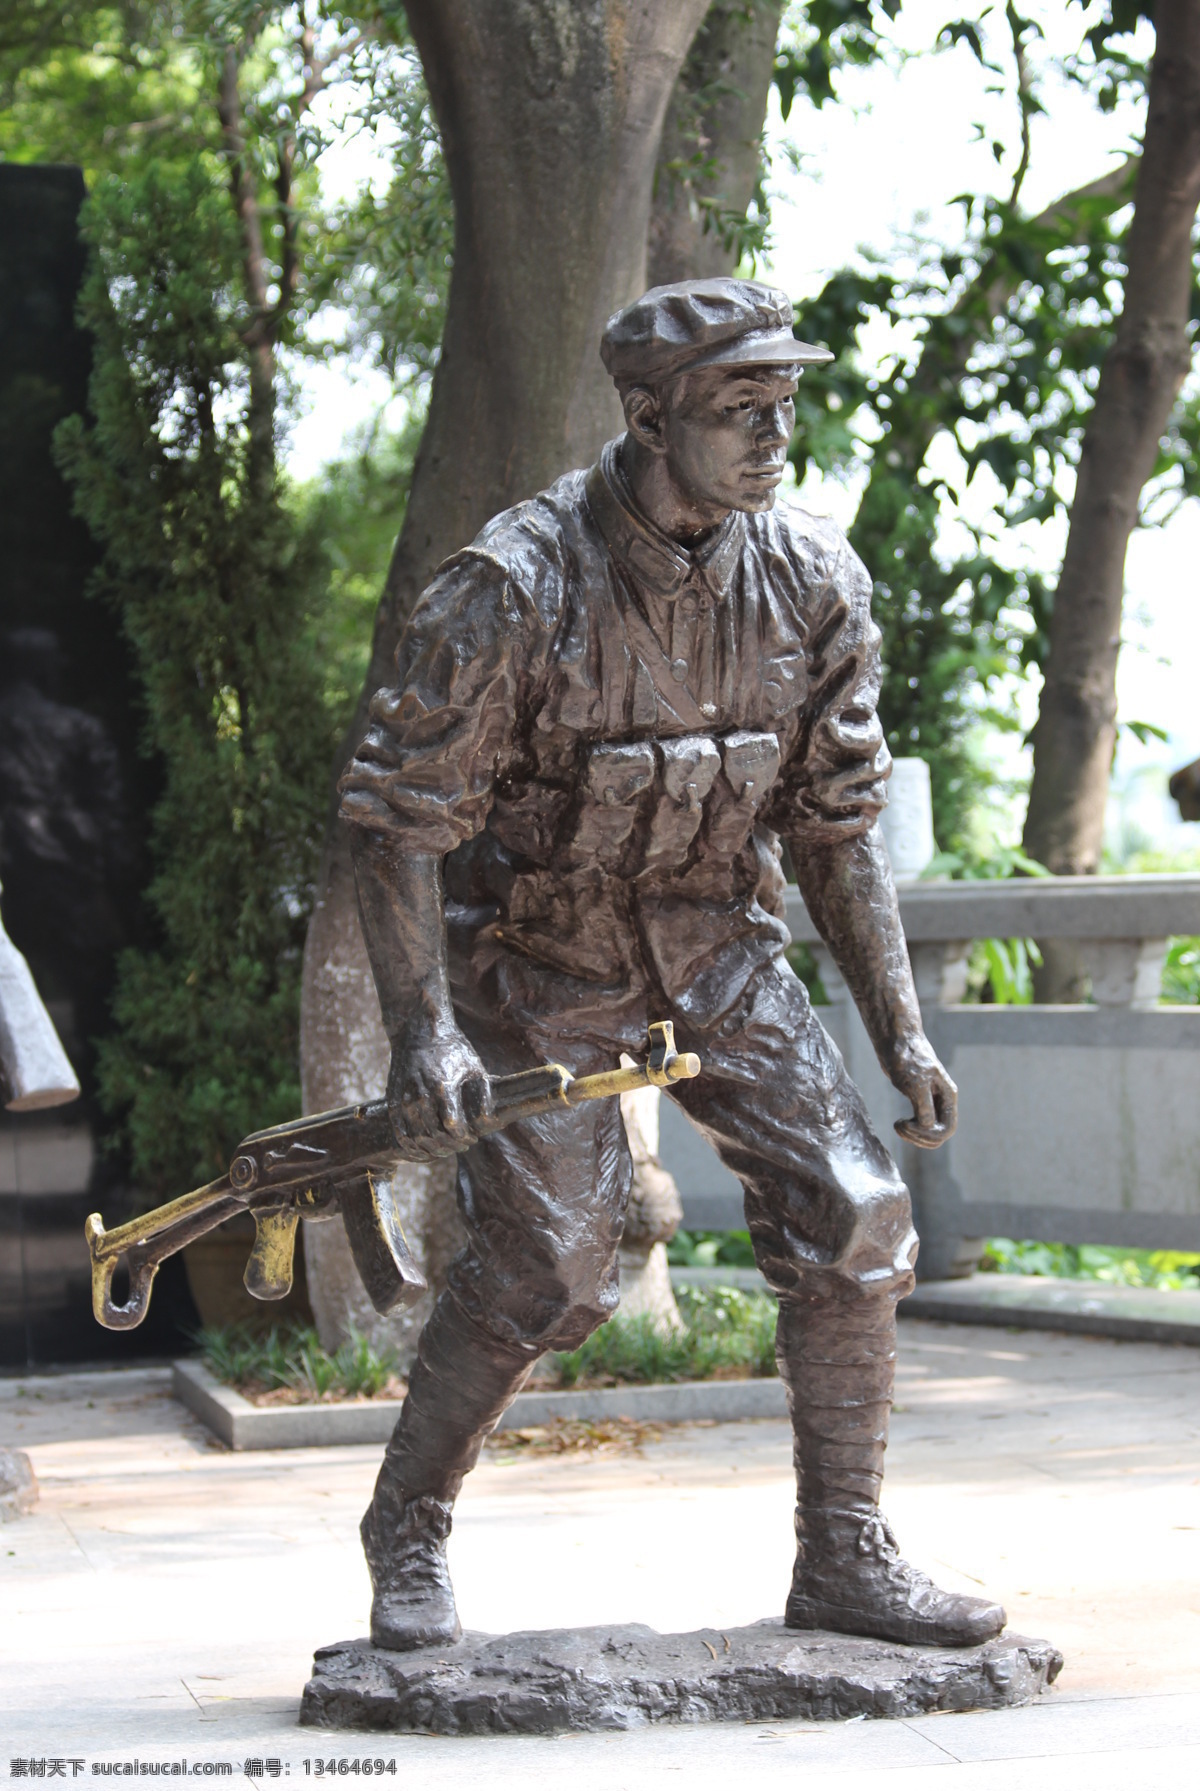 战士的雕像 战士 雕像 公园 旅游 抗日 英雄 纪念 爱国 战争 战友 负伤 前线 旅游摄影 建筑园林 雕塑